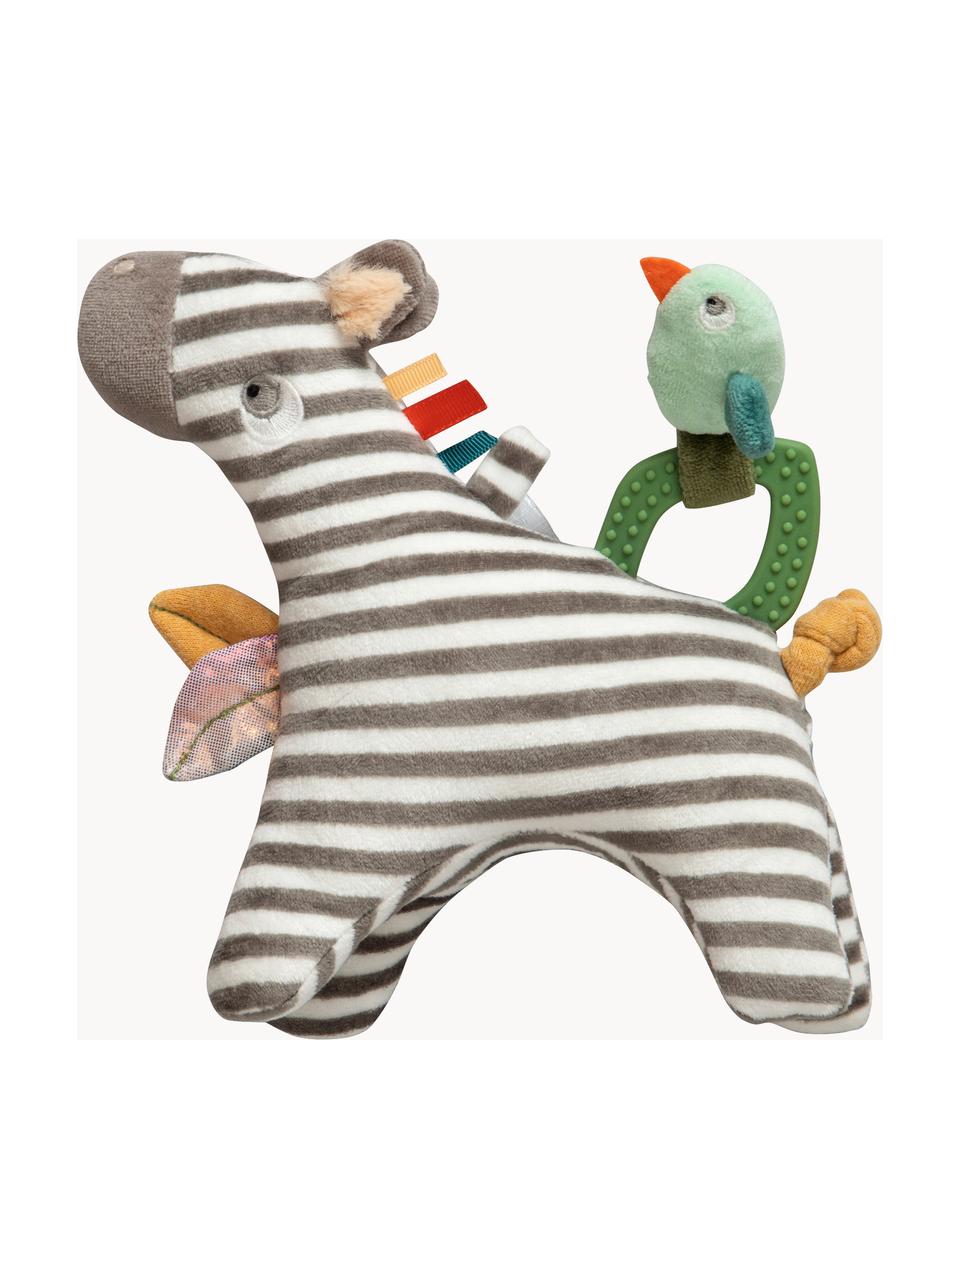 Aktivitäts-Spielzeug Zapp the Zebra, Bezug: 100 % Polyester, Grau, Bunt, B 19 x H 21 cm